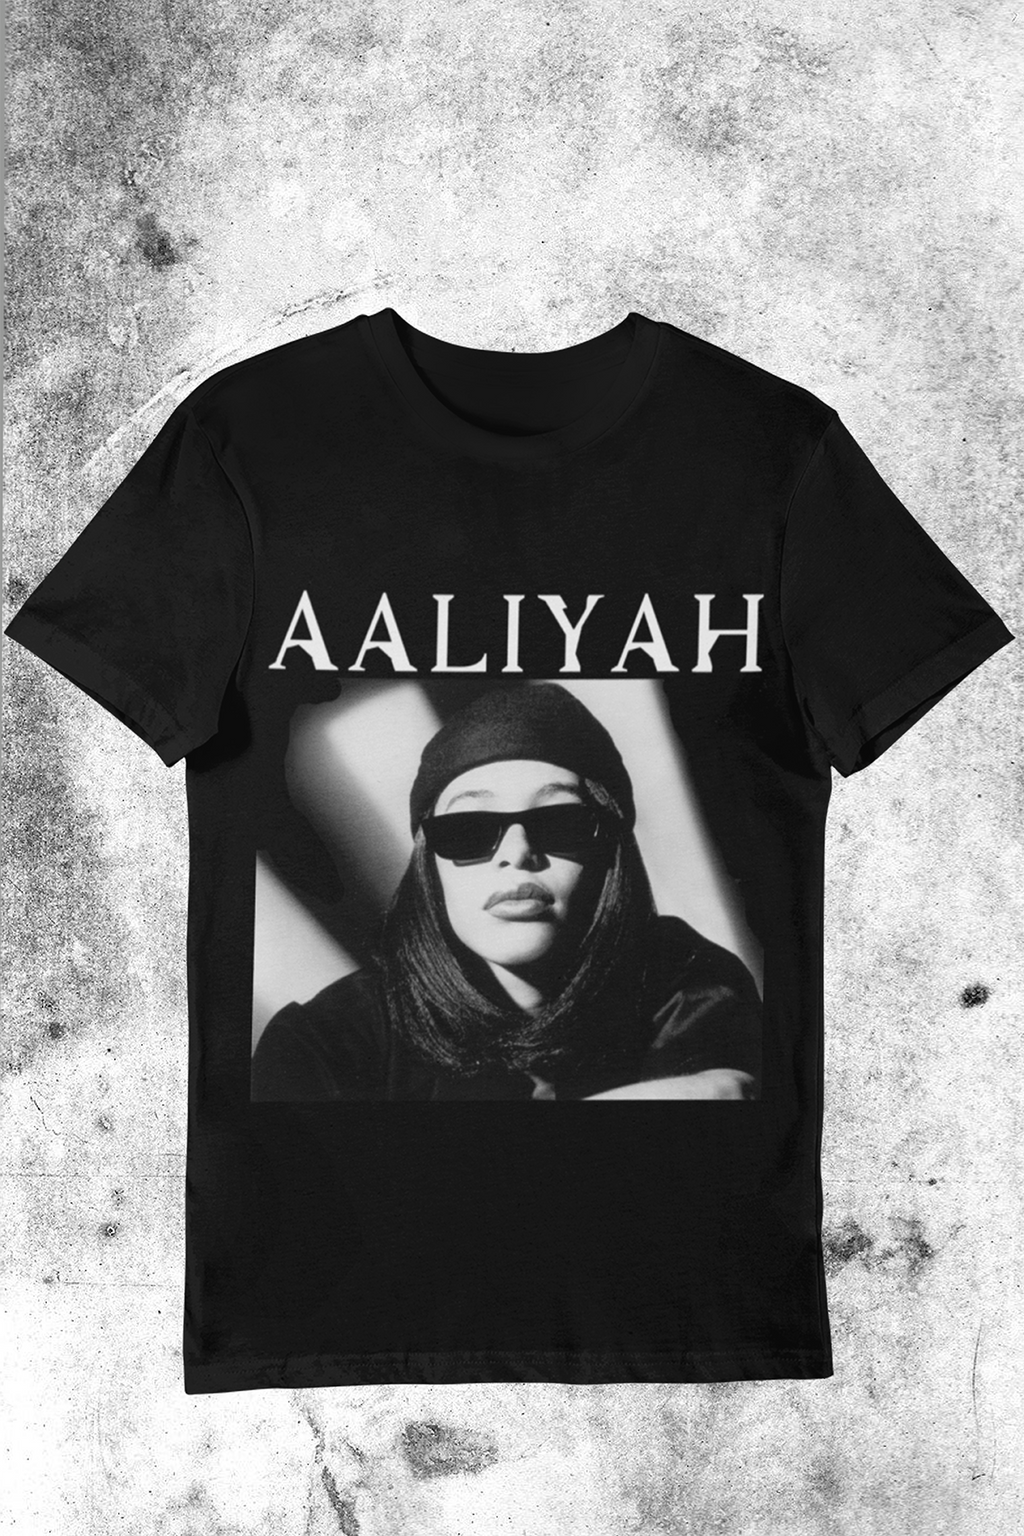 "Aaliyah Coolin"